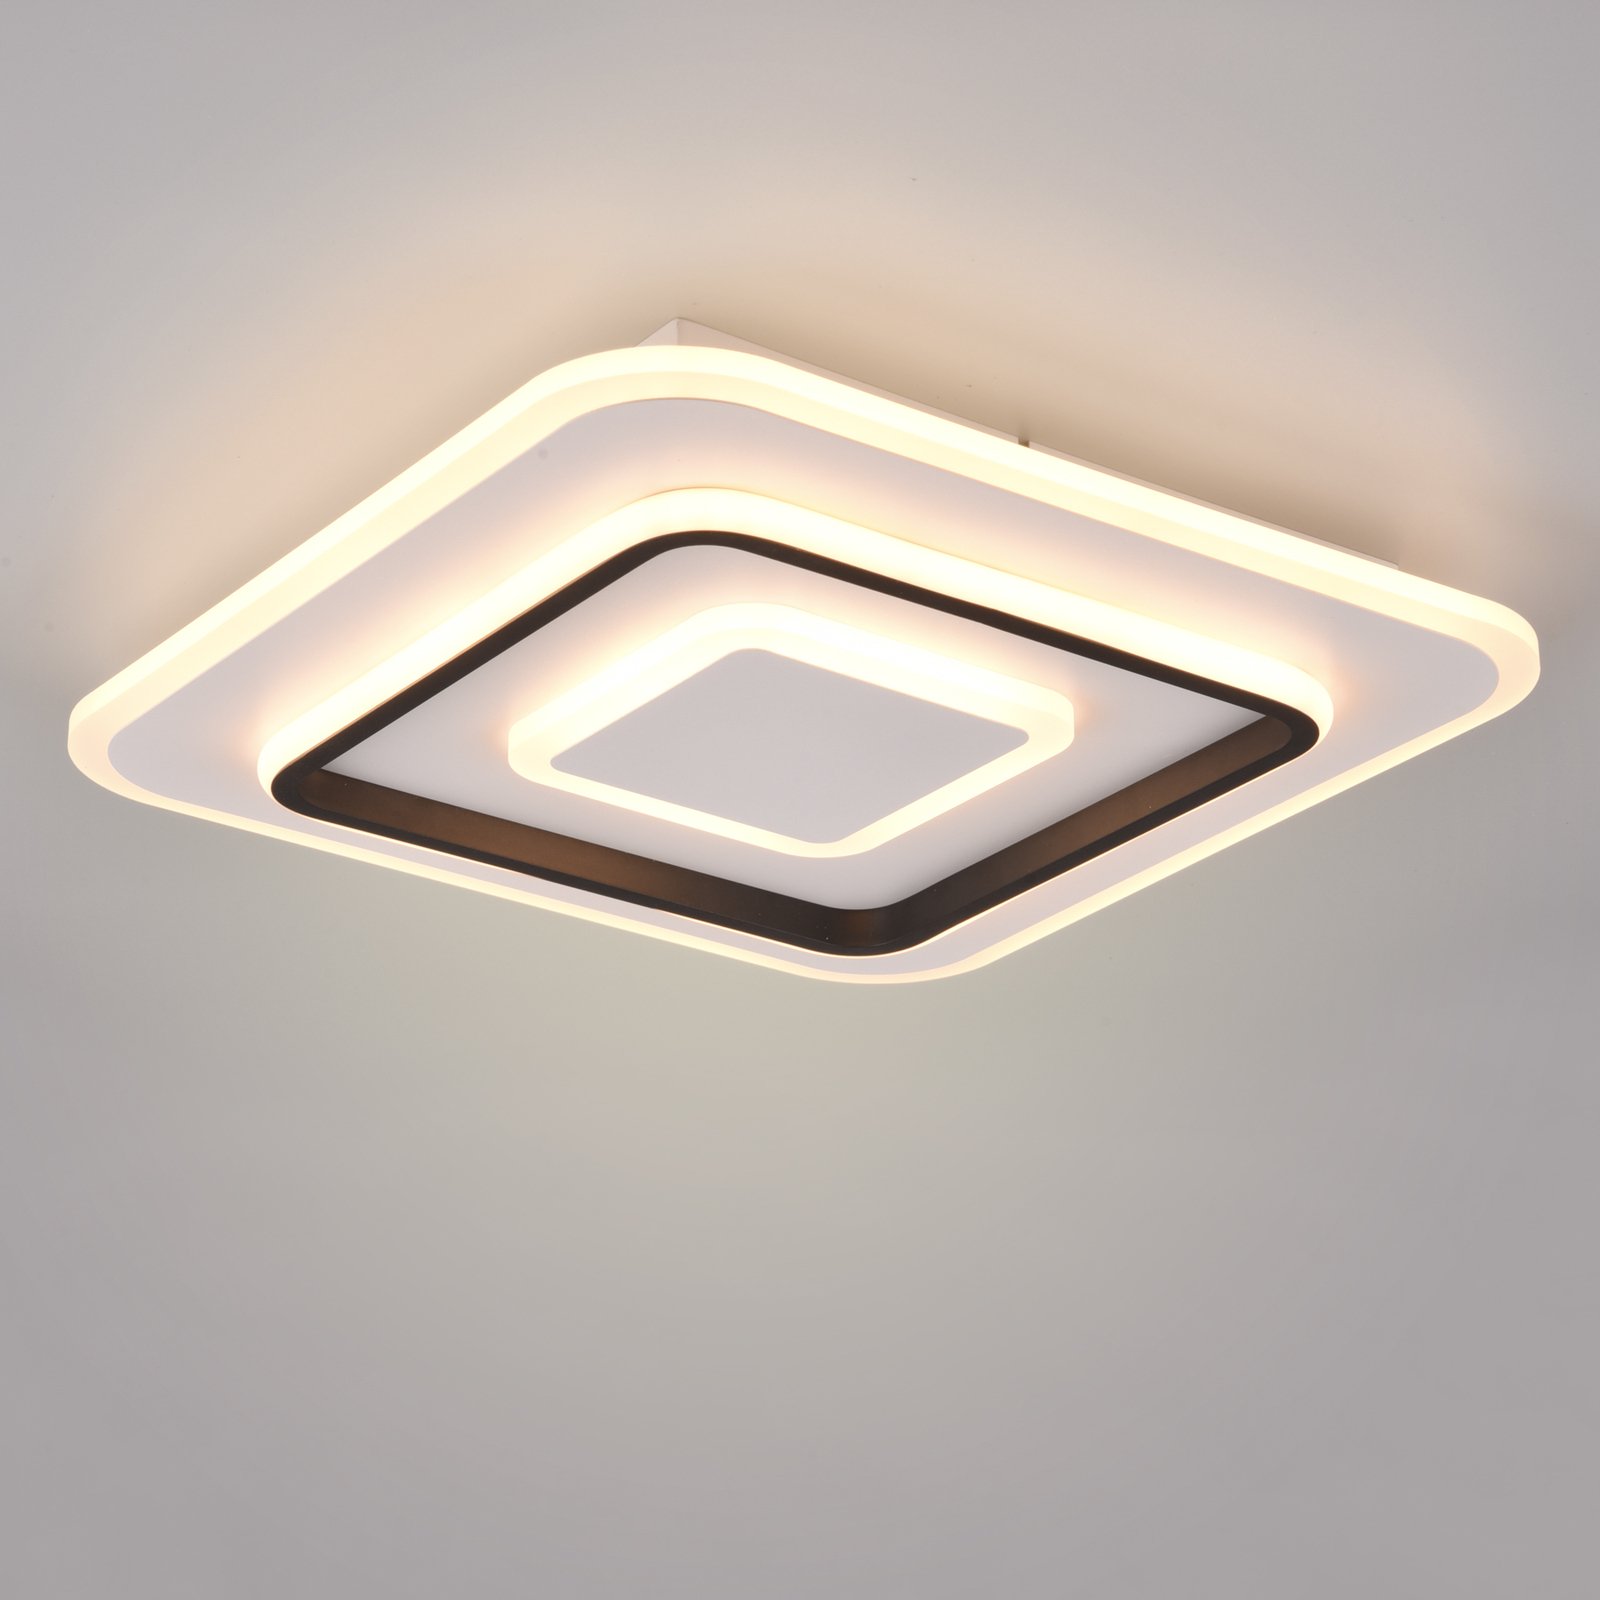 LED stropní svítidlo Jora hranaté, 39,5 x 39,5 cm